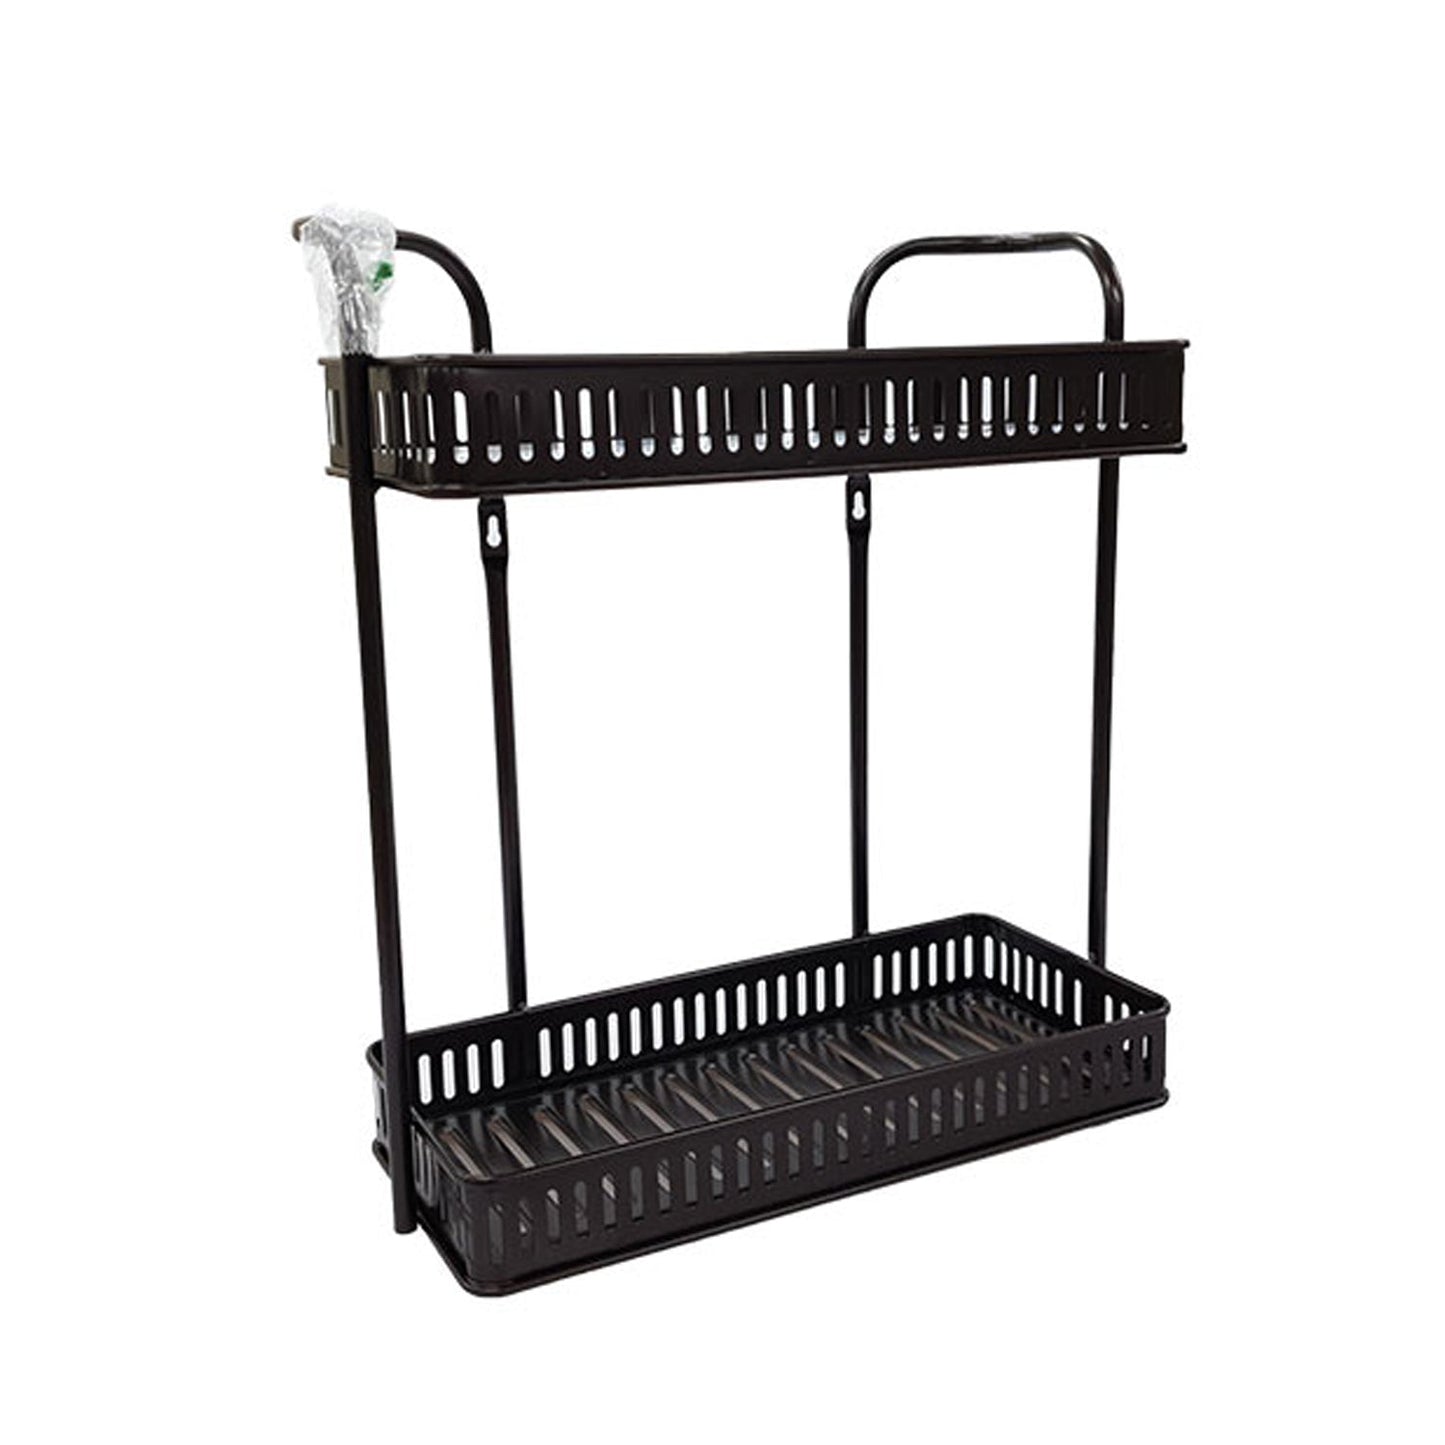 5149 Kitchen organizer Rack for Storage Home and Kitchen & Bathroom Use 